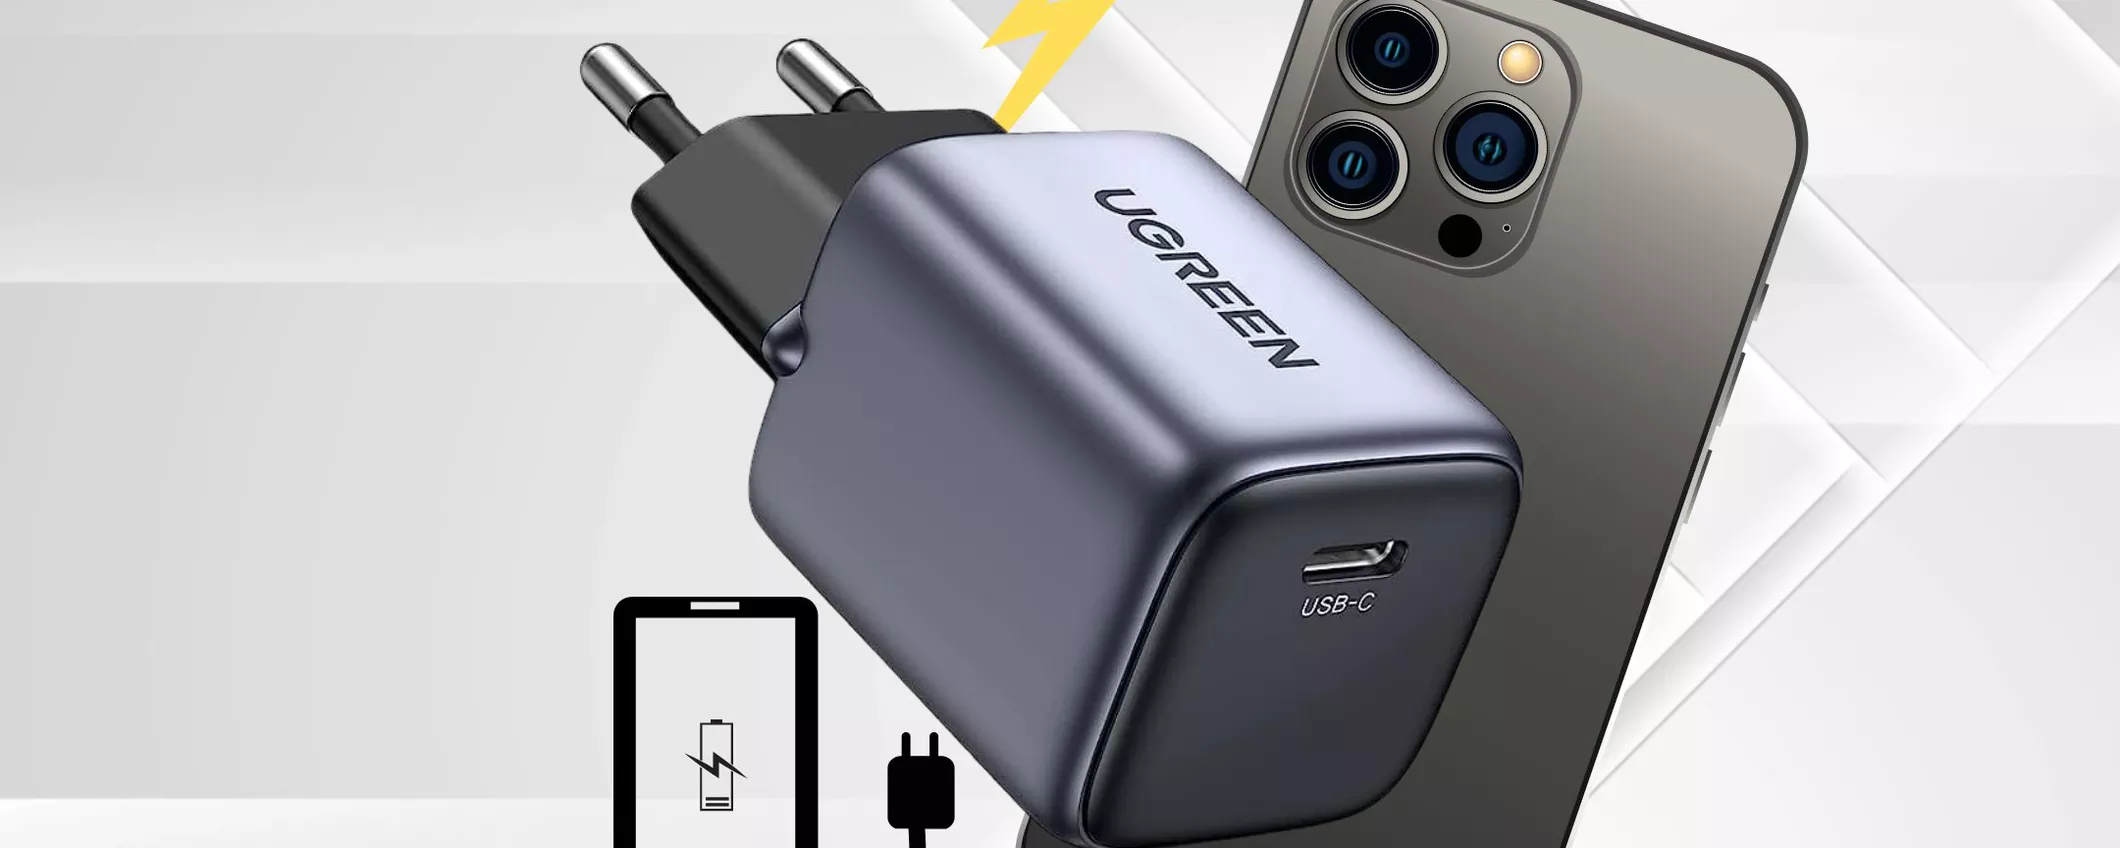 Caricatore USB C Mini: compatto e VELOCE da portare in valigia!